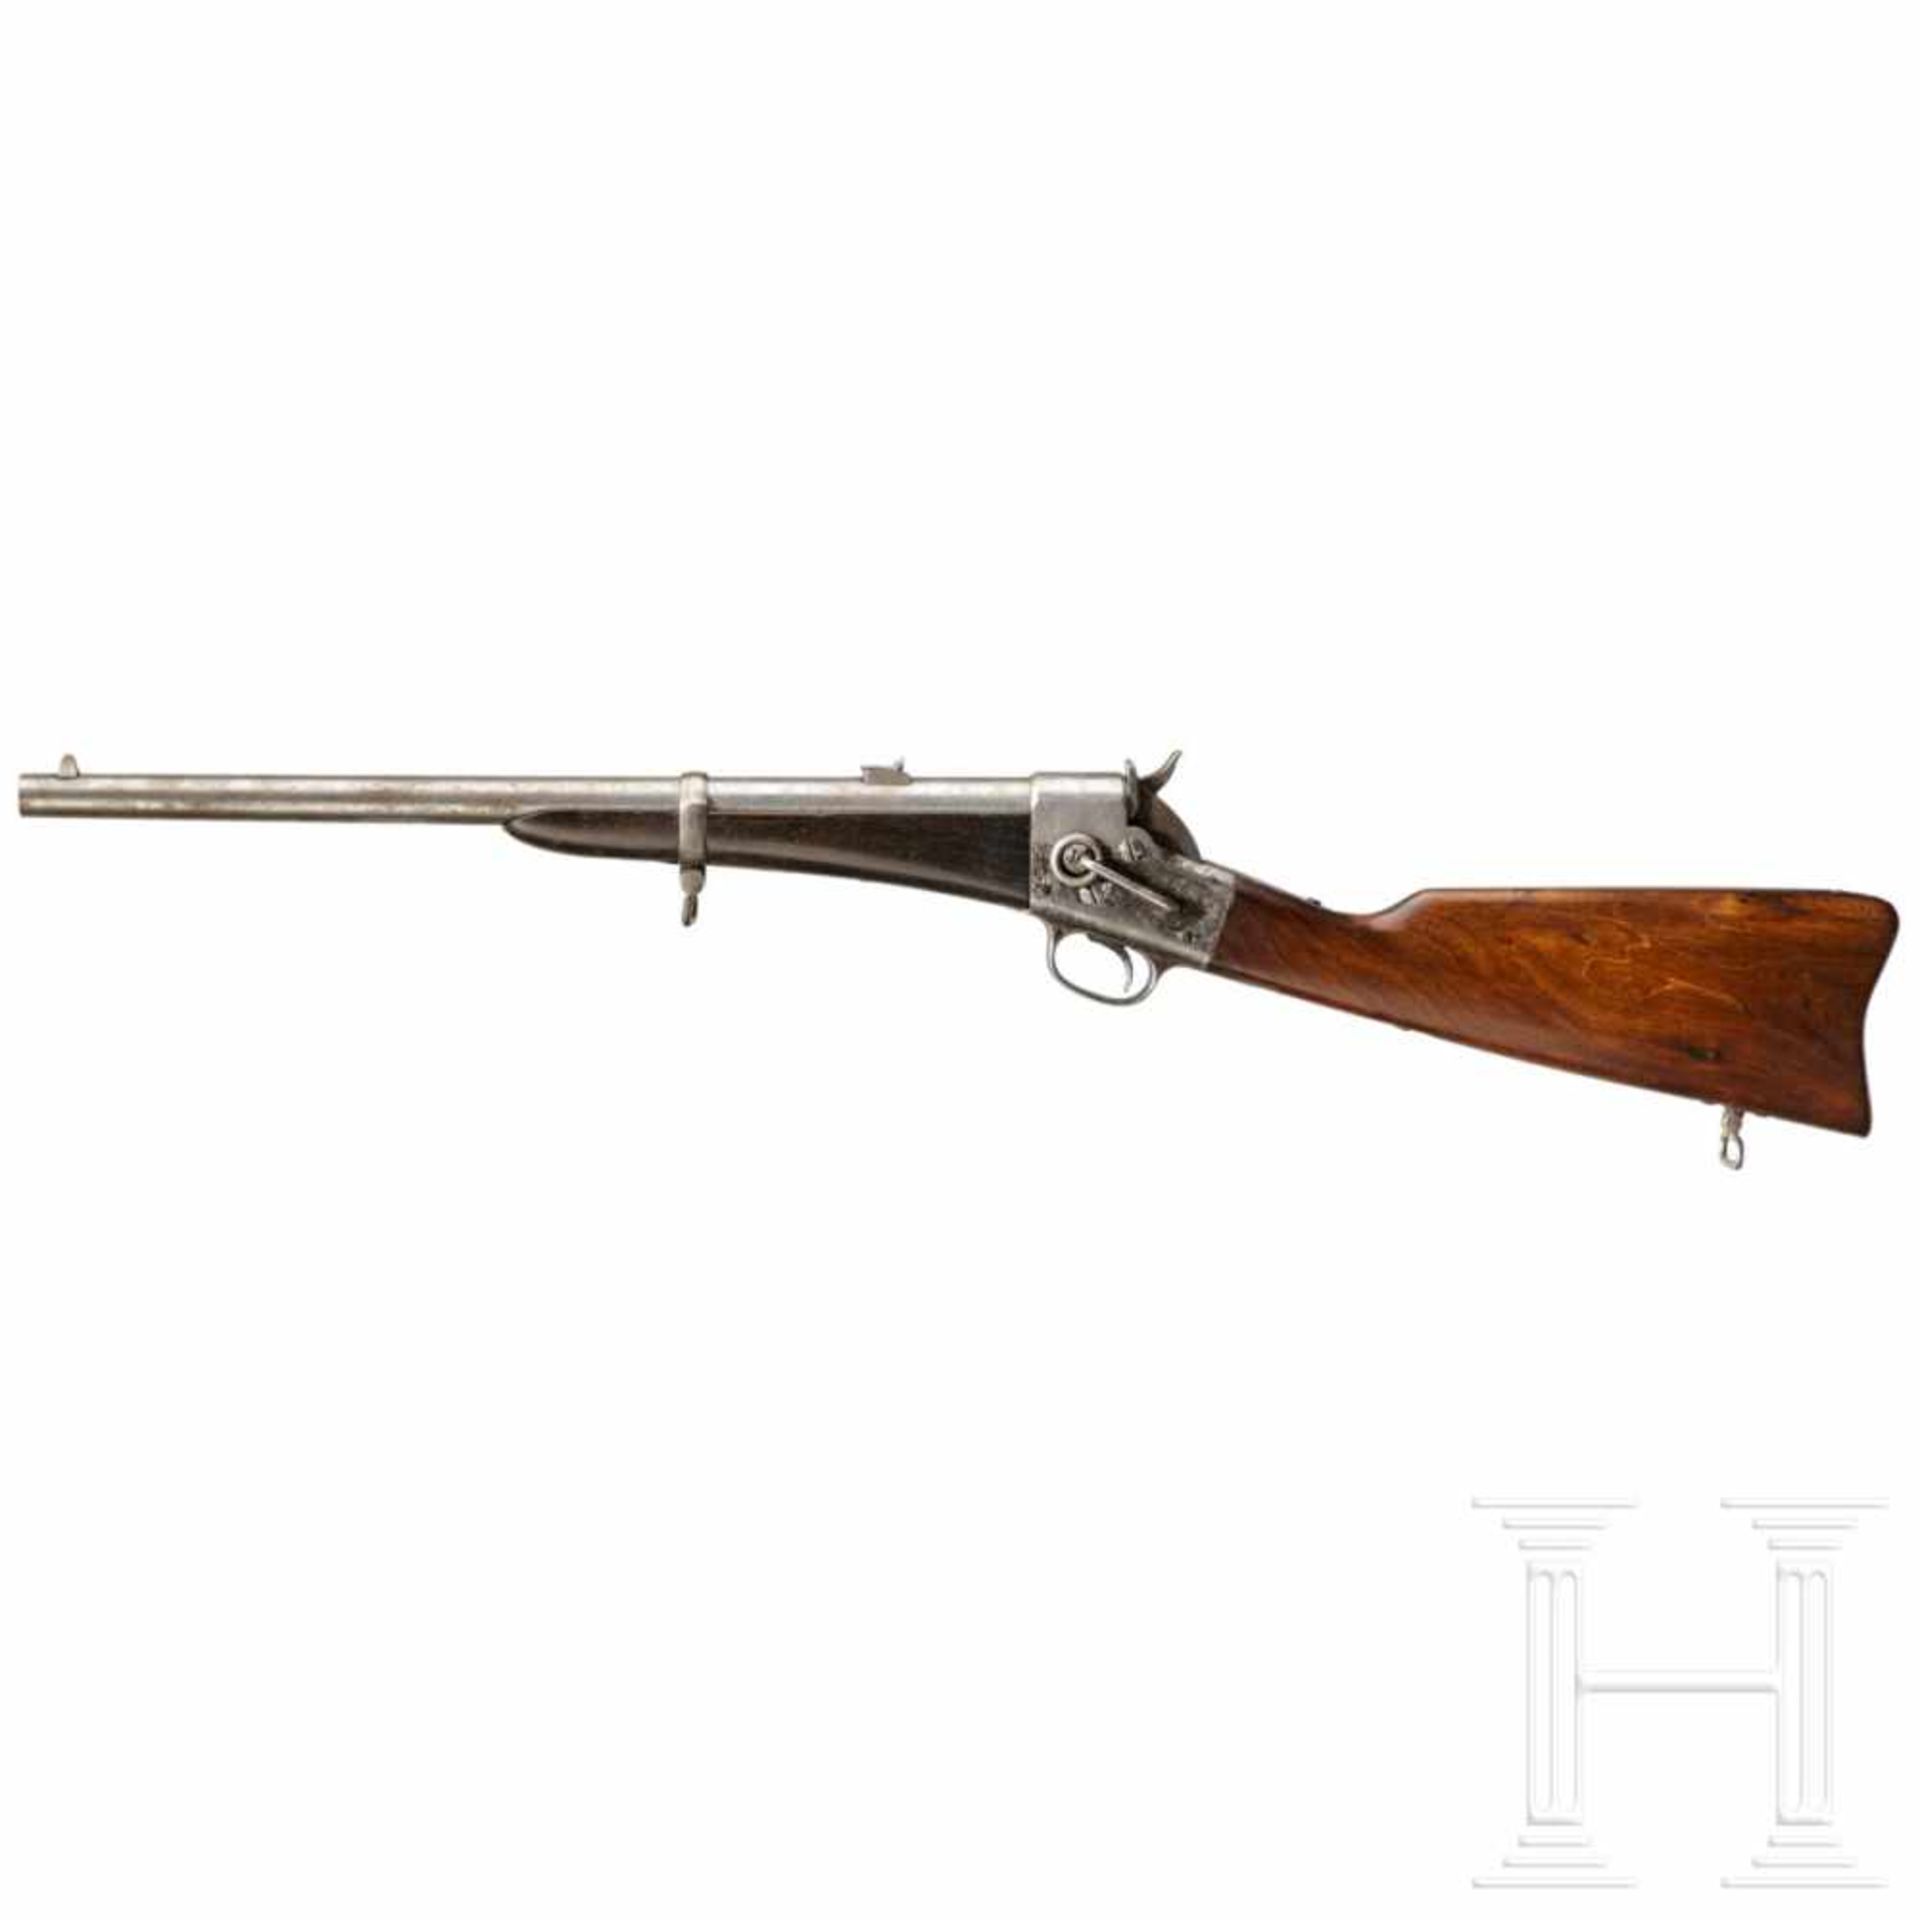 Remington Split Breech CarbineKal. .46, ohne Nr. Lauf partiell rau, Länge 20". Standvisier mit einer - Bild 2 aus 3